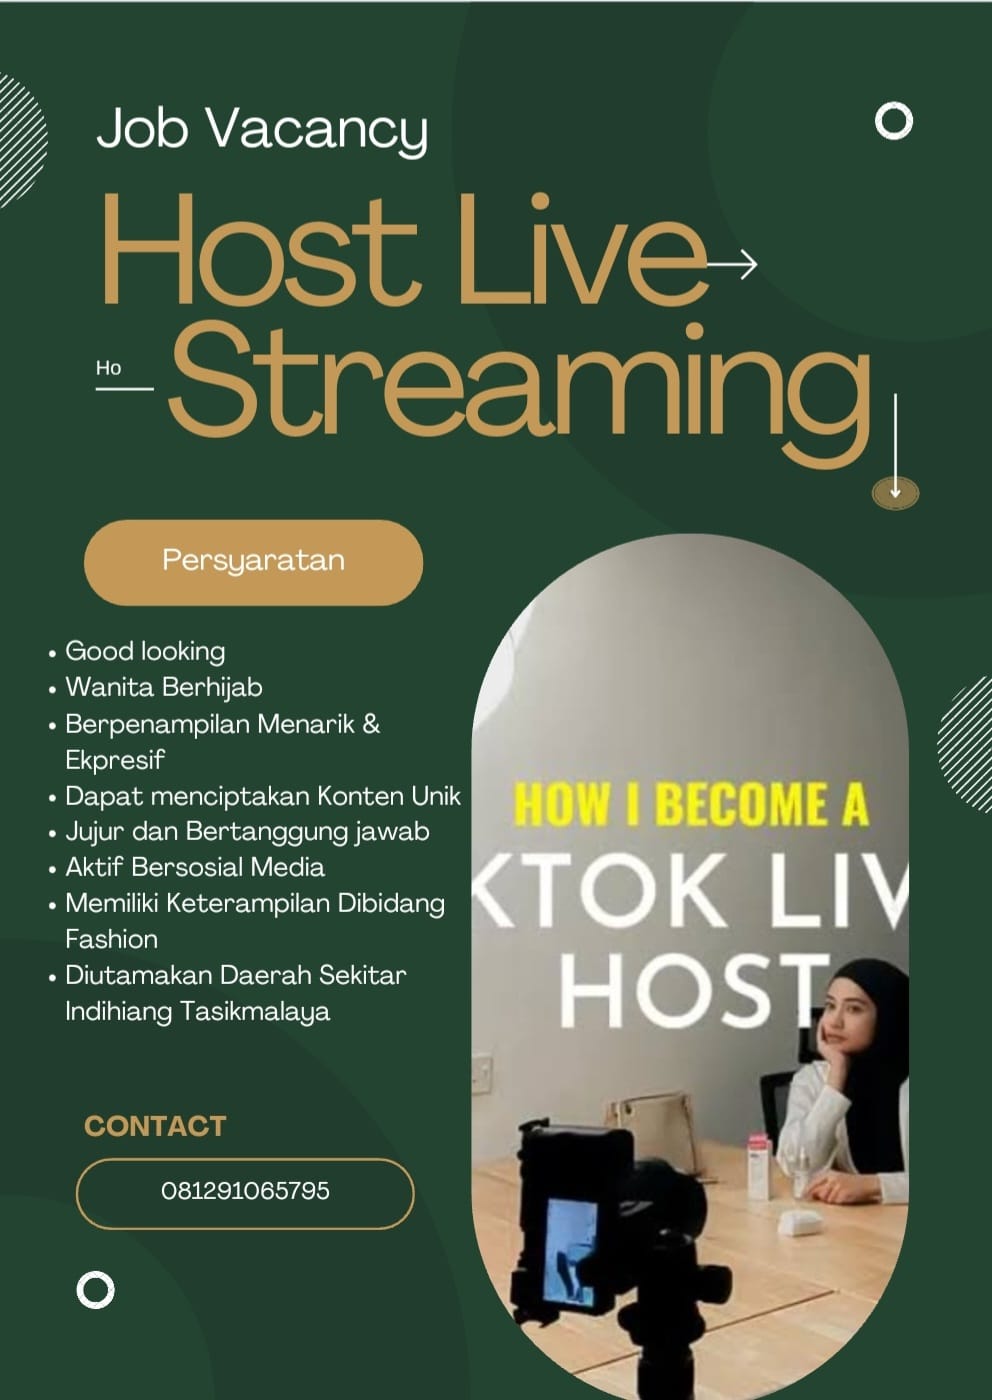 Kesempatan-Berkarir-Lowongan-Kerja-Sebagai-Host-Live-Streaming-Penempatan-Tasikmalaya